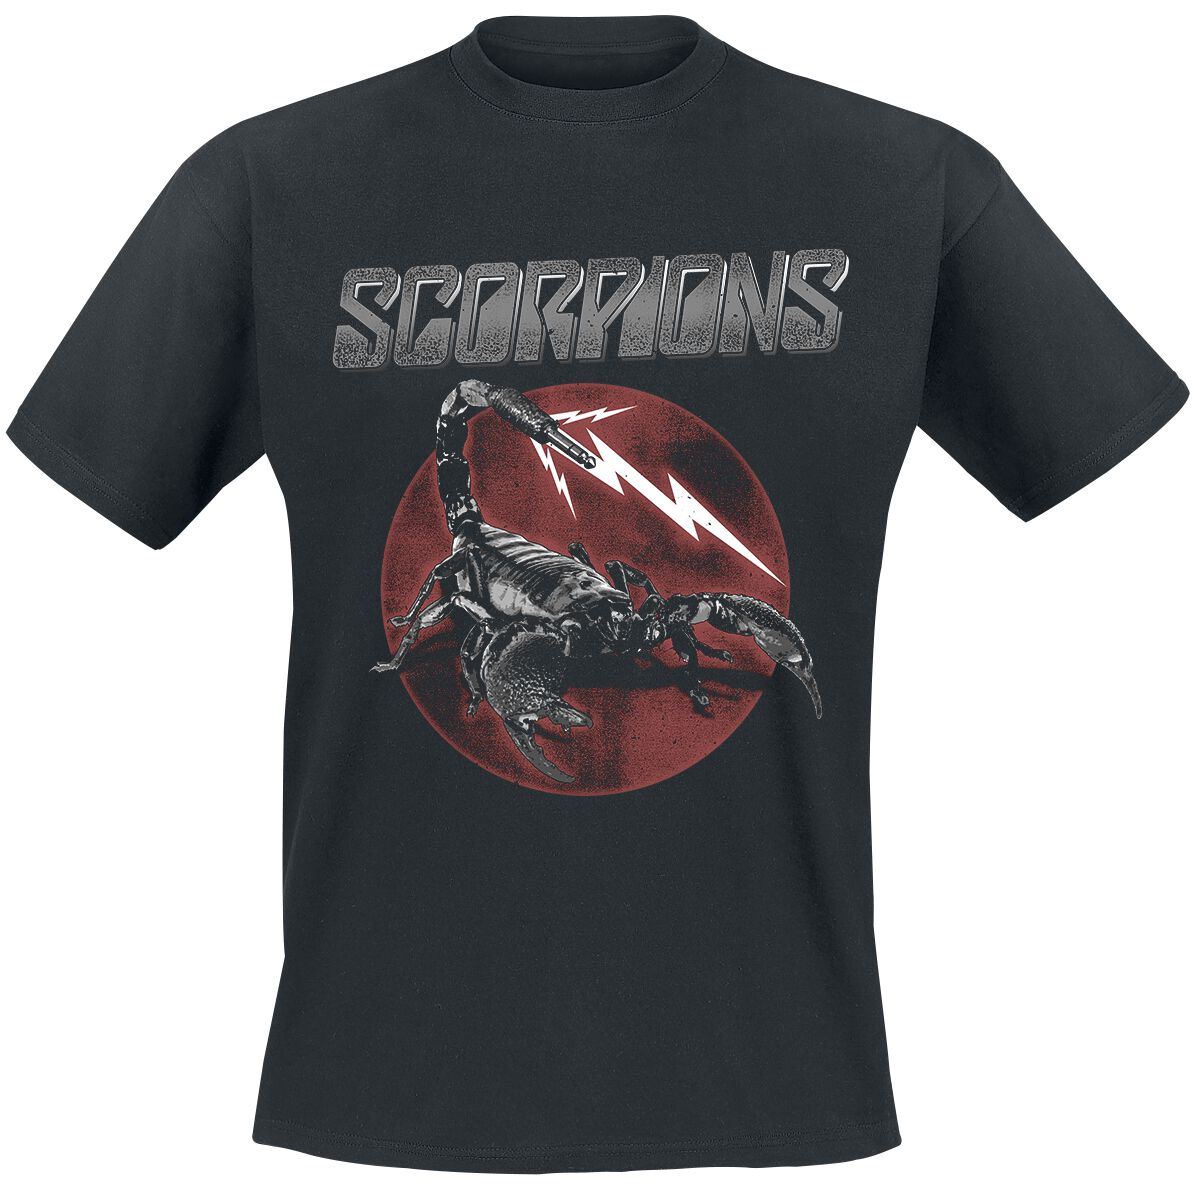 Scorpions T-Shirt - 7 Jack Plug - S bis 3XL - für Männer - Größe S - schwarz  - Lizenziertes Merchandise!